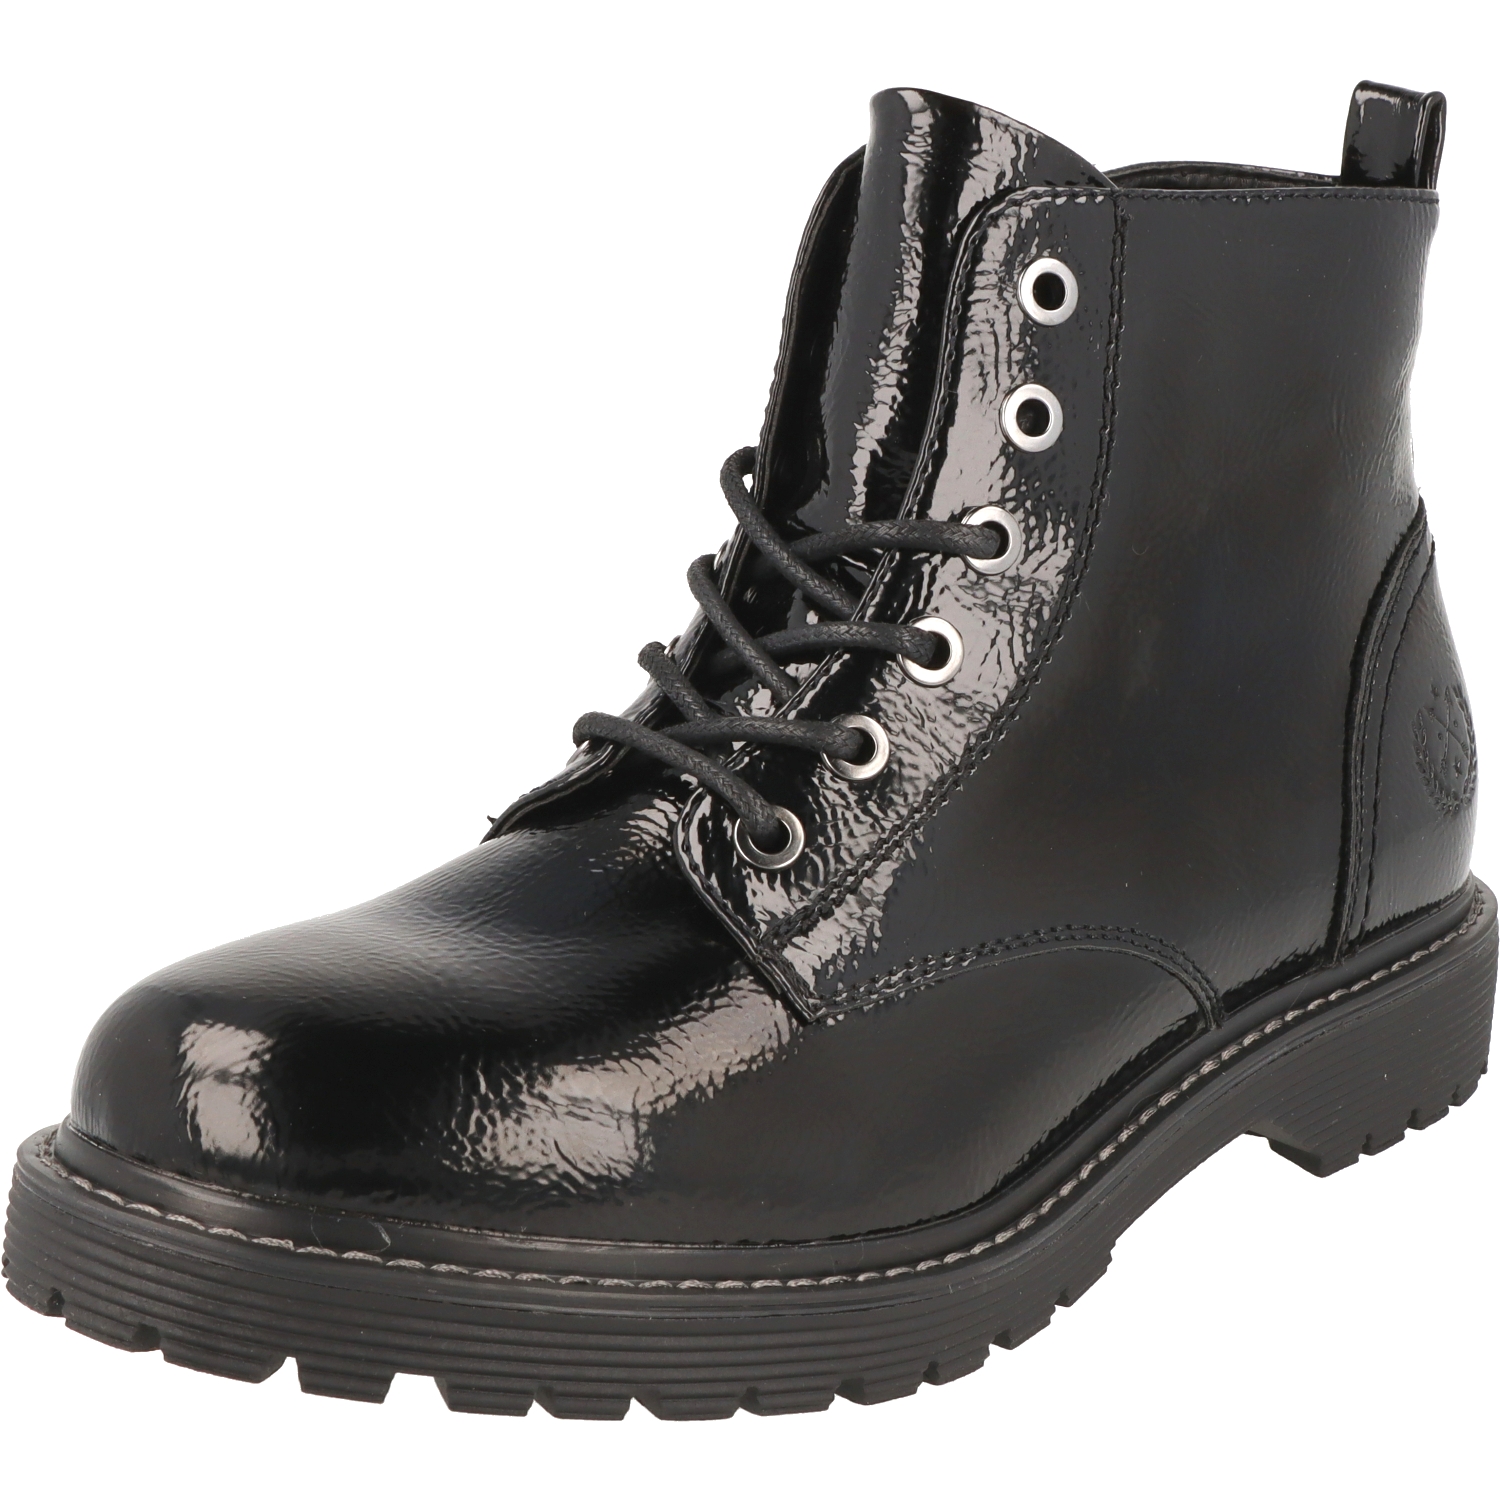 Jane Klain Woman Damen Schuhe Lack Boots Stiefel Schnürer 252-366 Black Lack